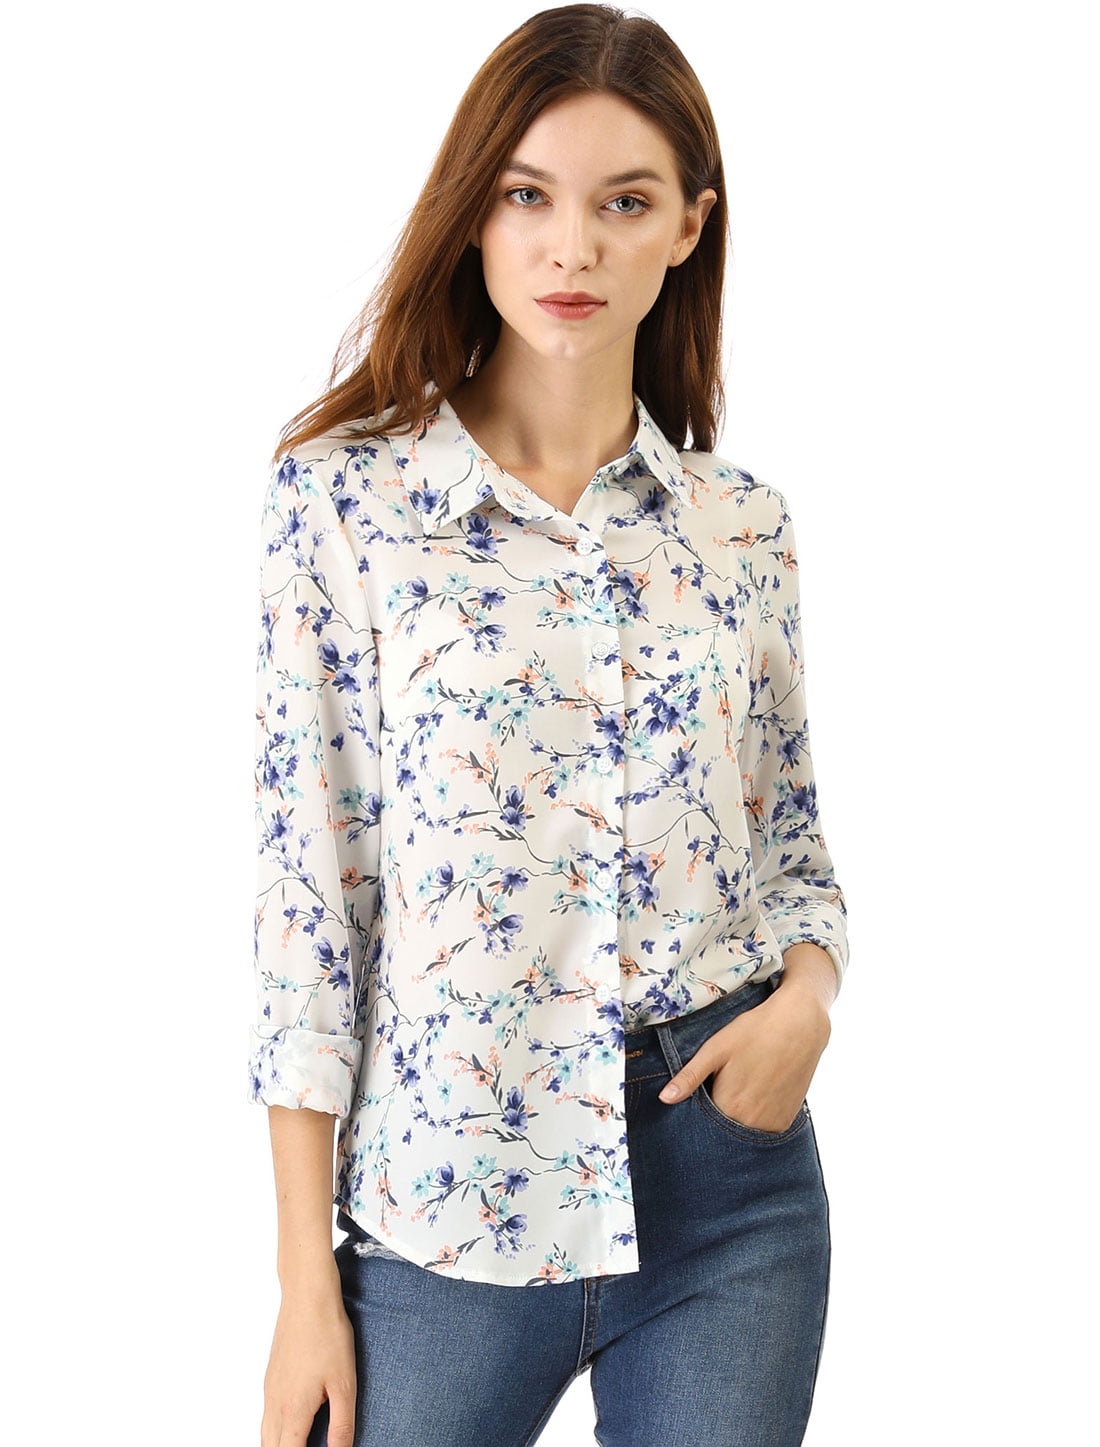 Unique Bargains - Women's Point Collar Button Down Floral Shirt XL ...